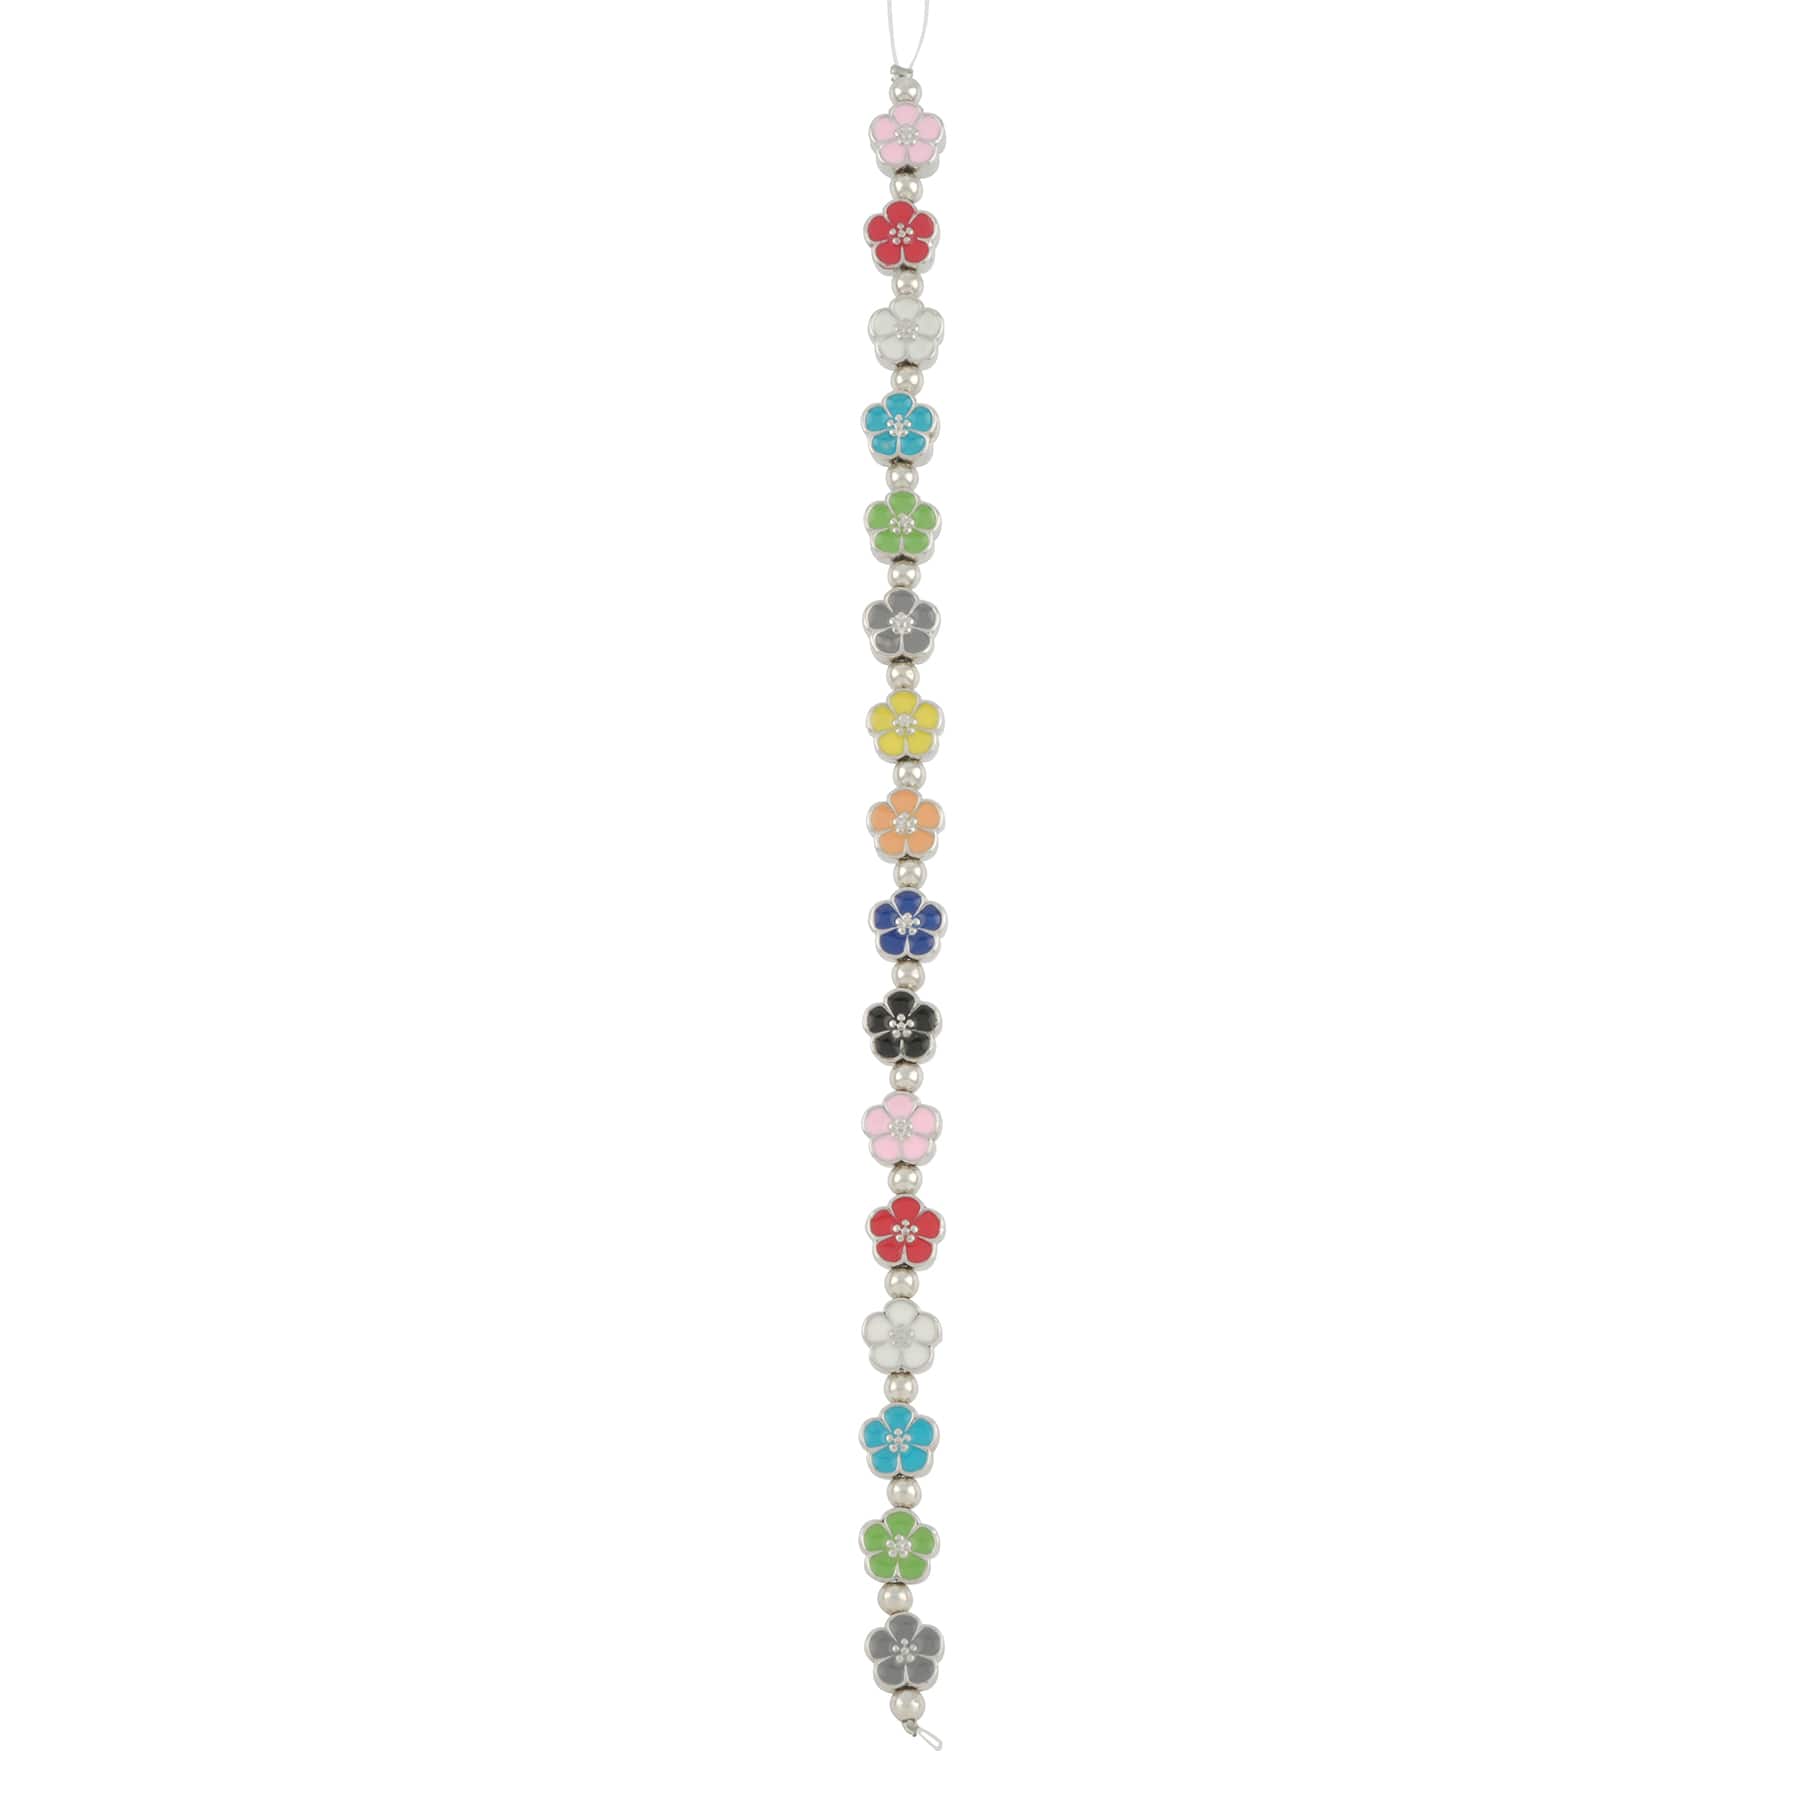 12 Packs: 16 ct. (192 total) Multicolor Enamel Metal Flower Beads, 8mm by Bead Landing&#x2122;